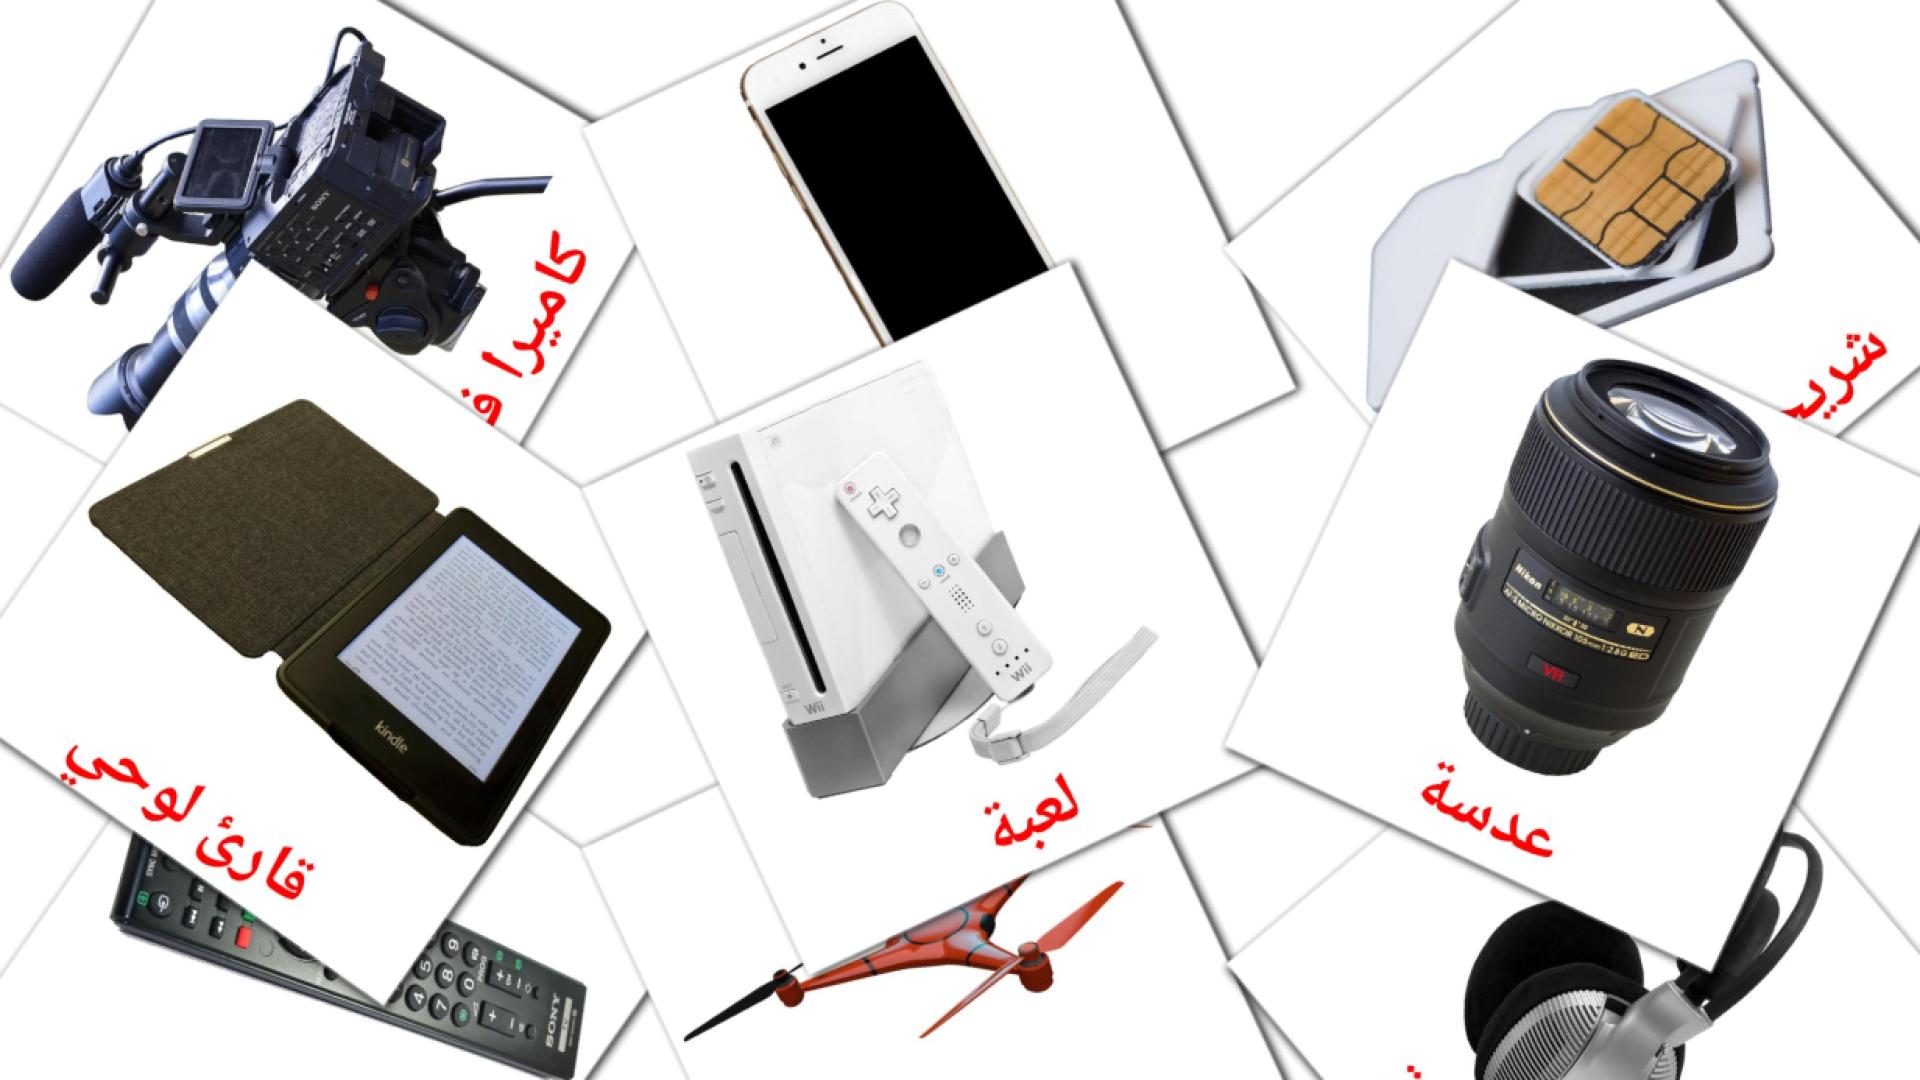 Appareil numérique - cartes de vocabulaire arabe